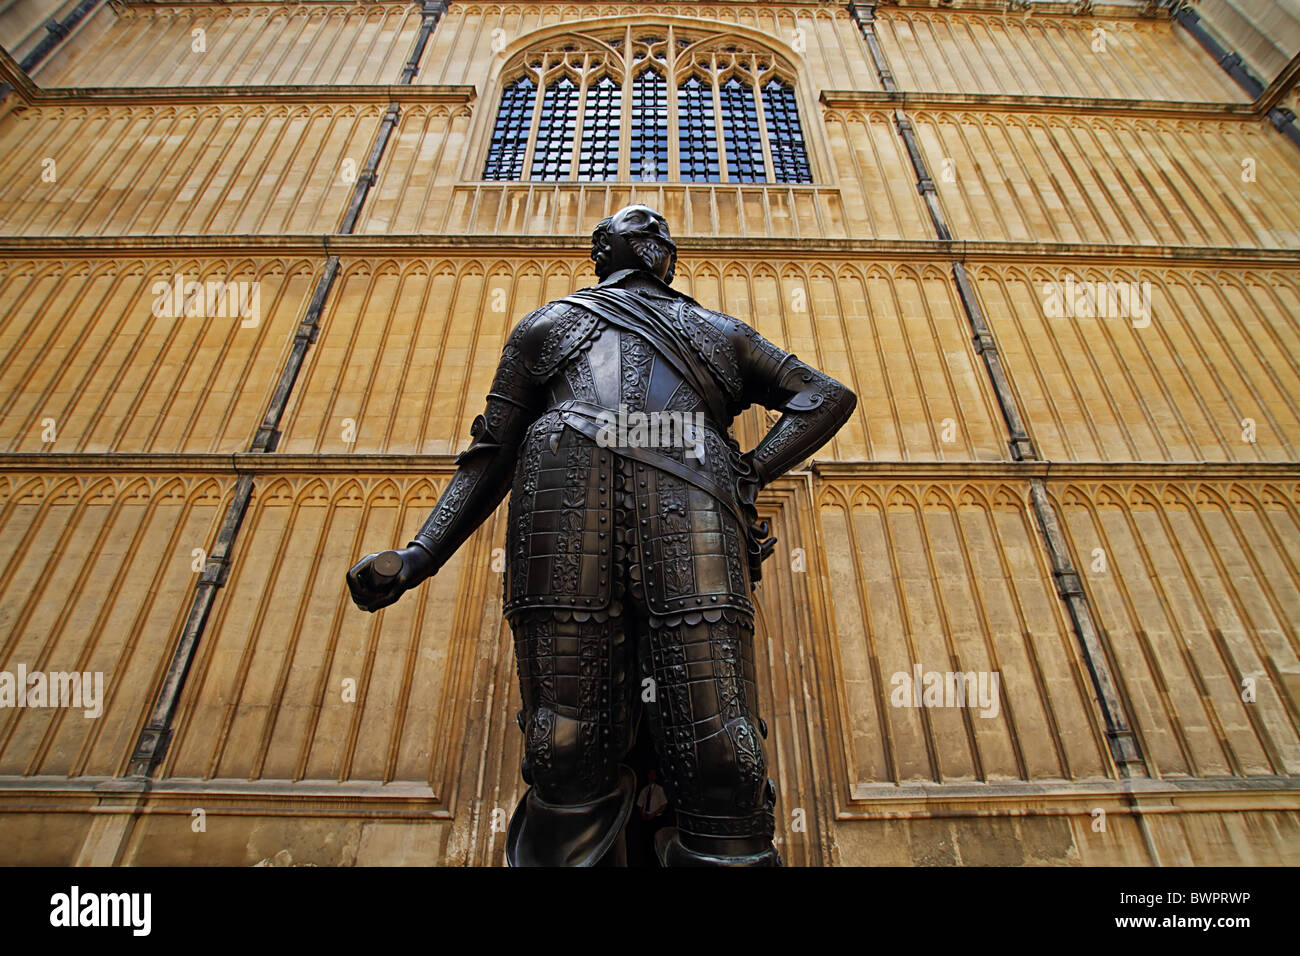 Bodlean Library Oxford Earl of Pembroke statue Stockfoto